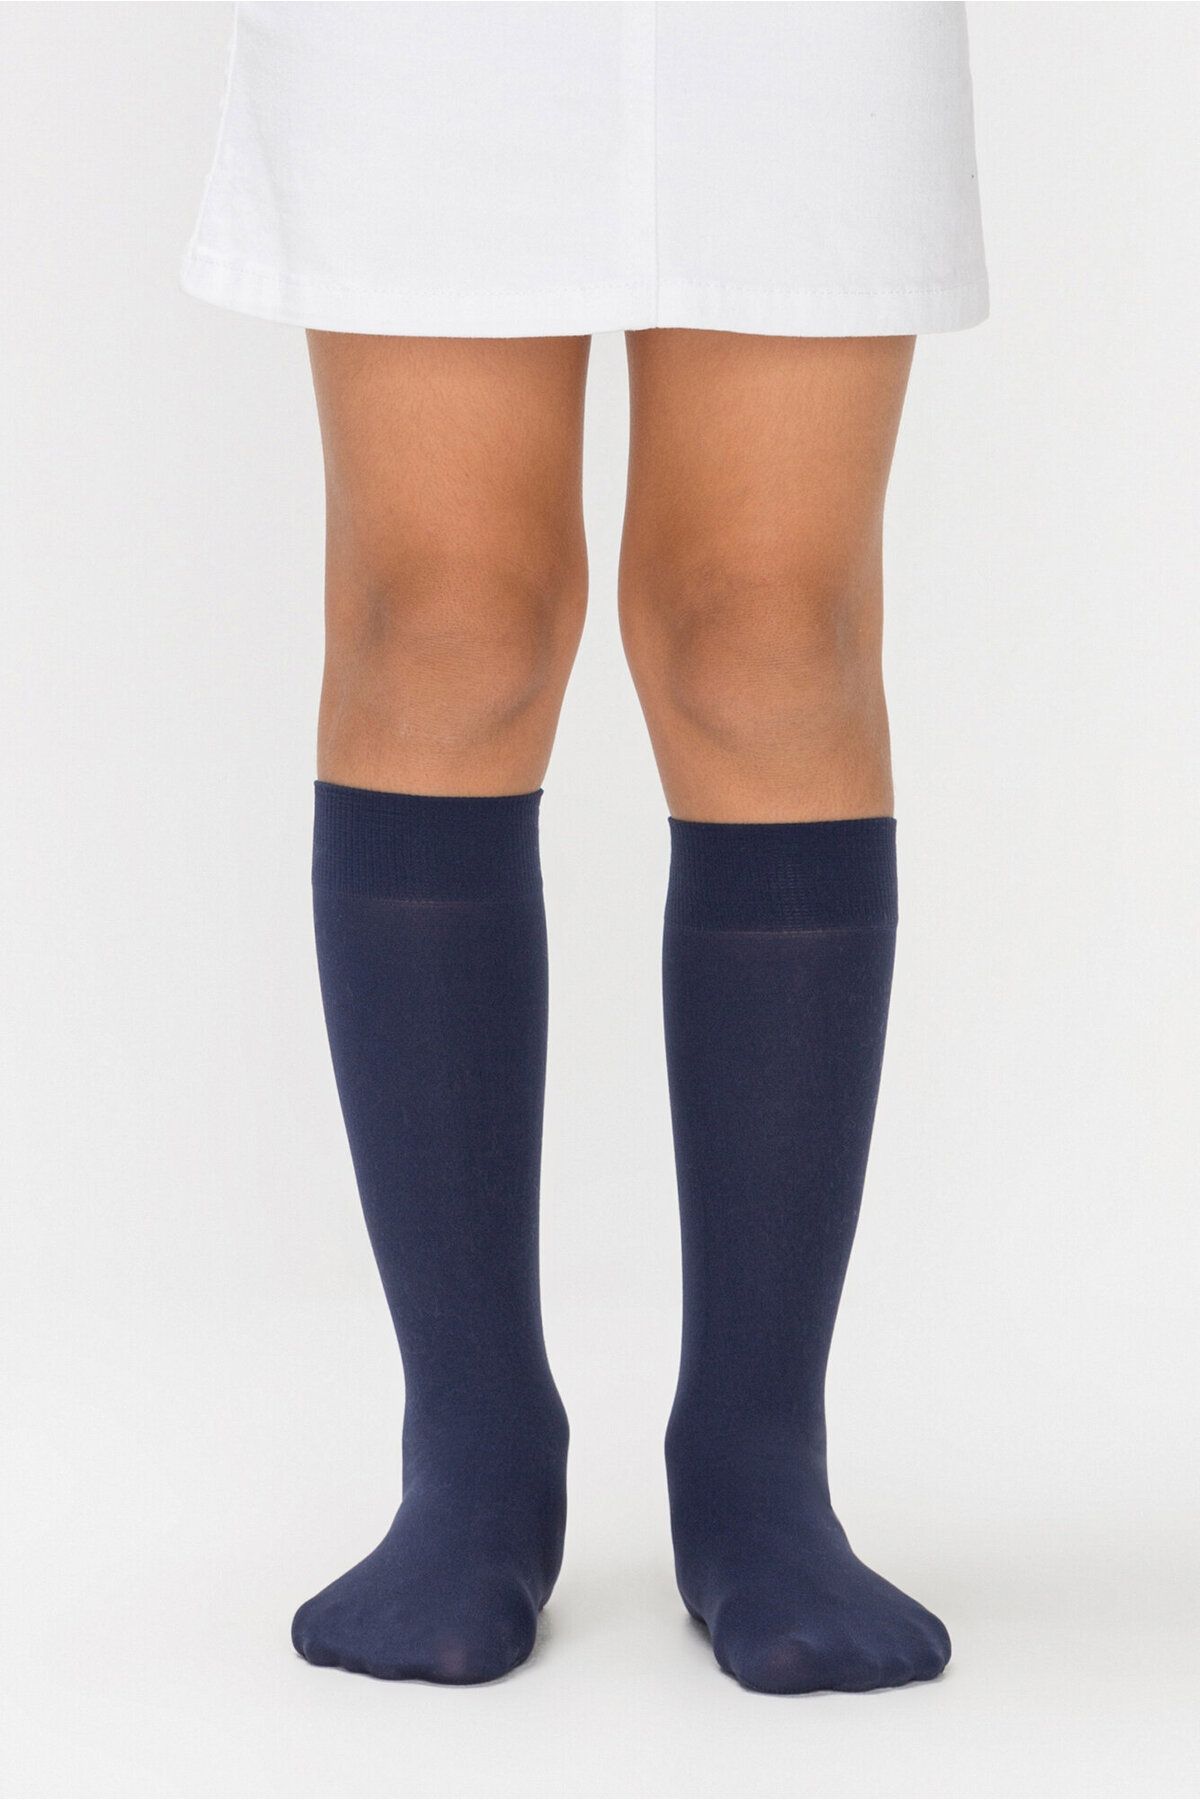 Penti Lacivert Kız Çocuk Micro 40 Pantolon Çorabı